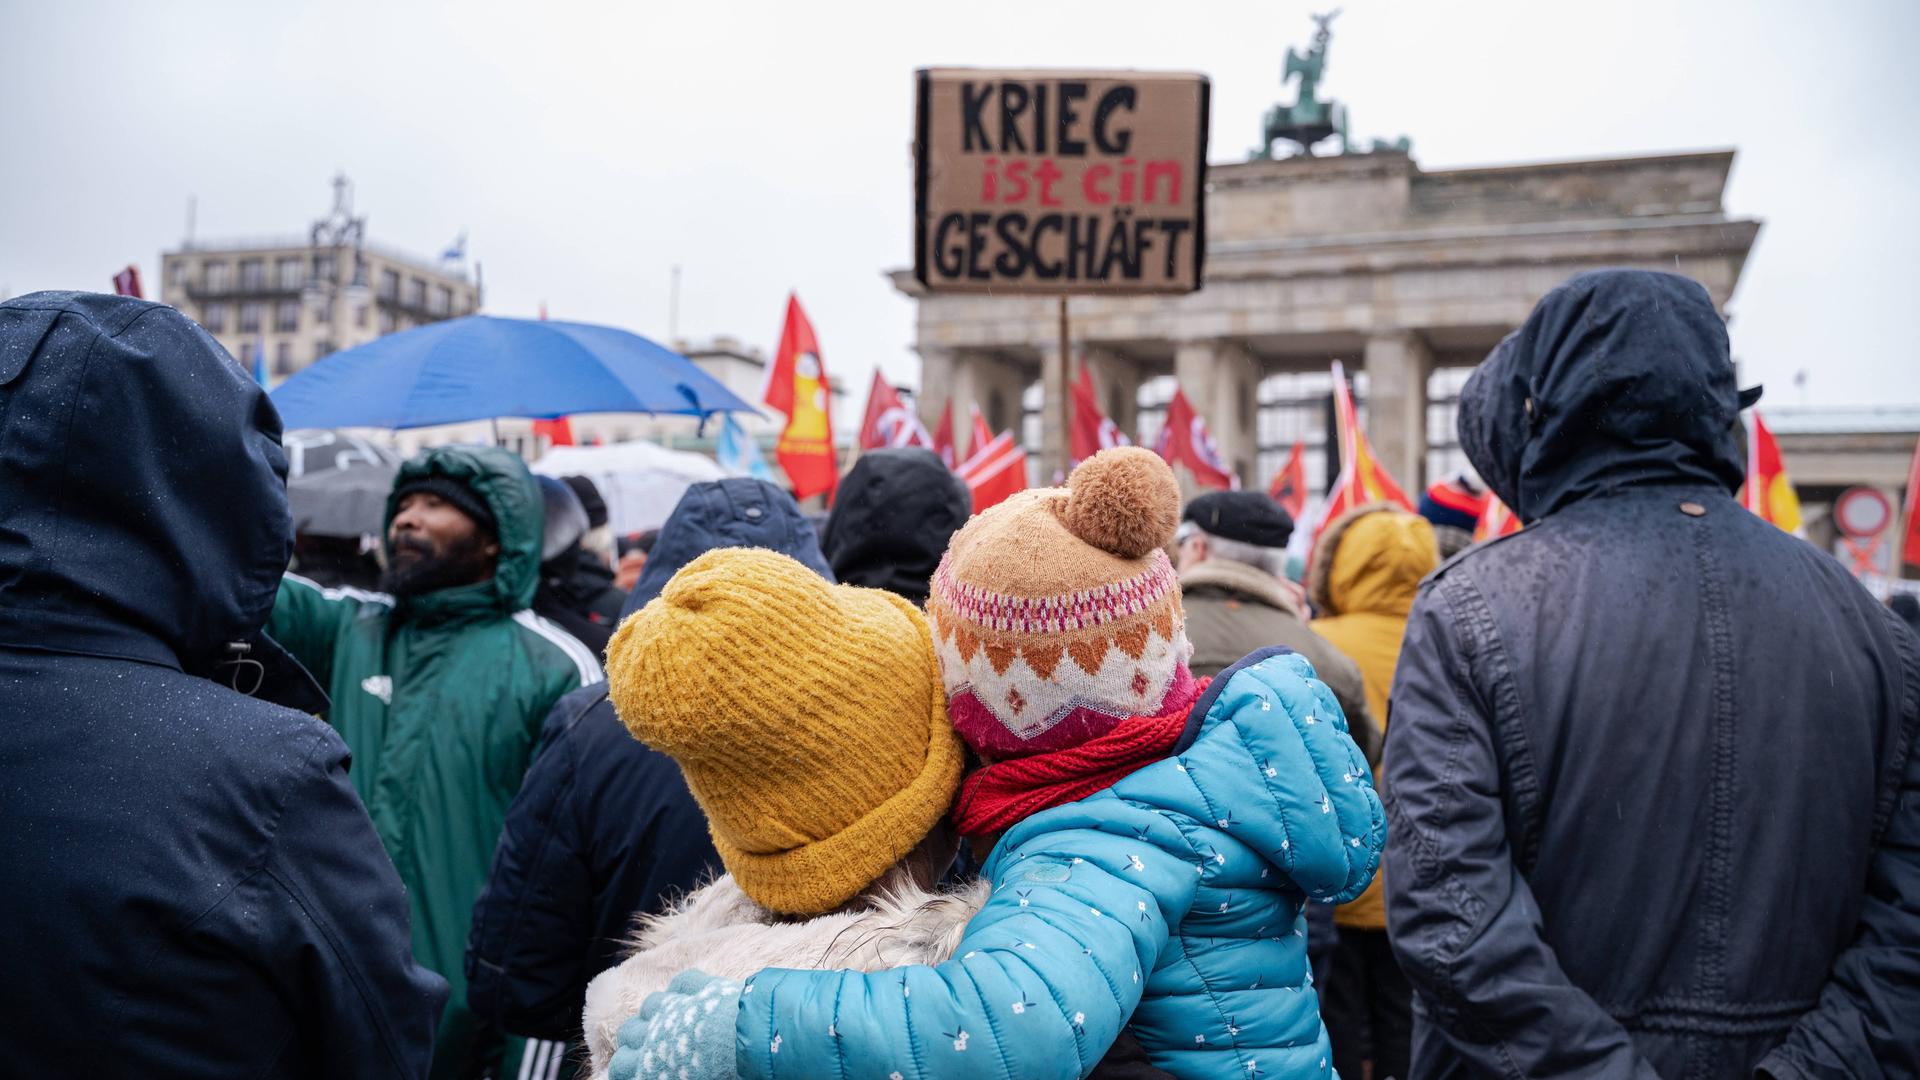 Einige tausend Menschen demonstrieren am Brandenburger Tor im Berliner Bezirk Mitte für den Frieden unter dem Titel Nein zu Kriegen - Rüstungswahnsinn stoppen. Auf einem Schild steht "Krieg ist ein Geschäft".